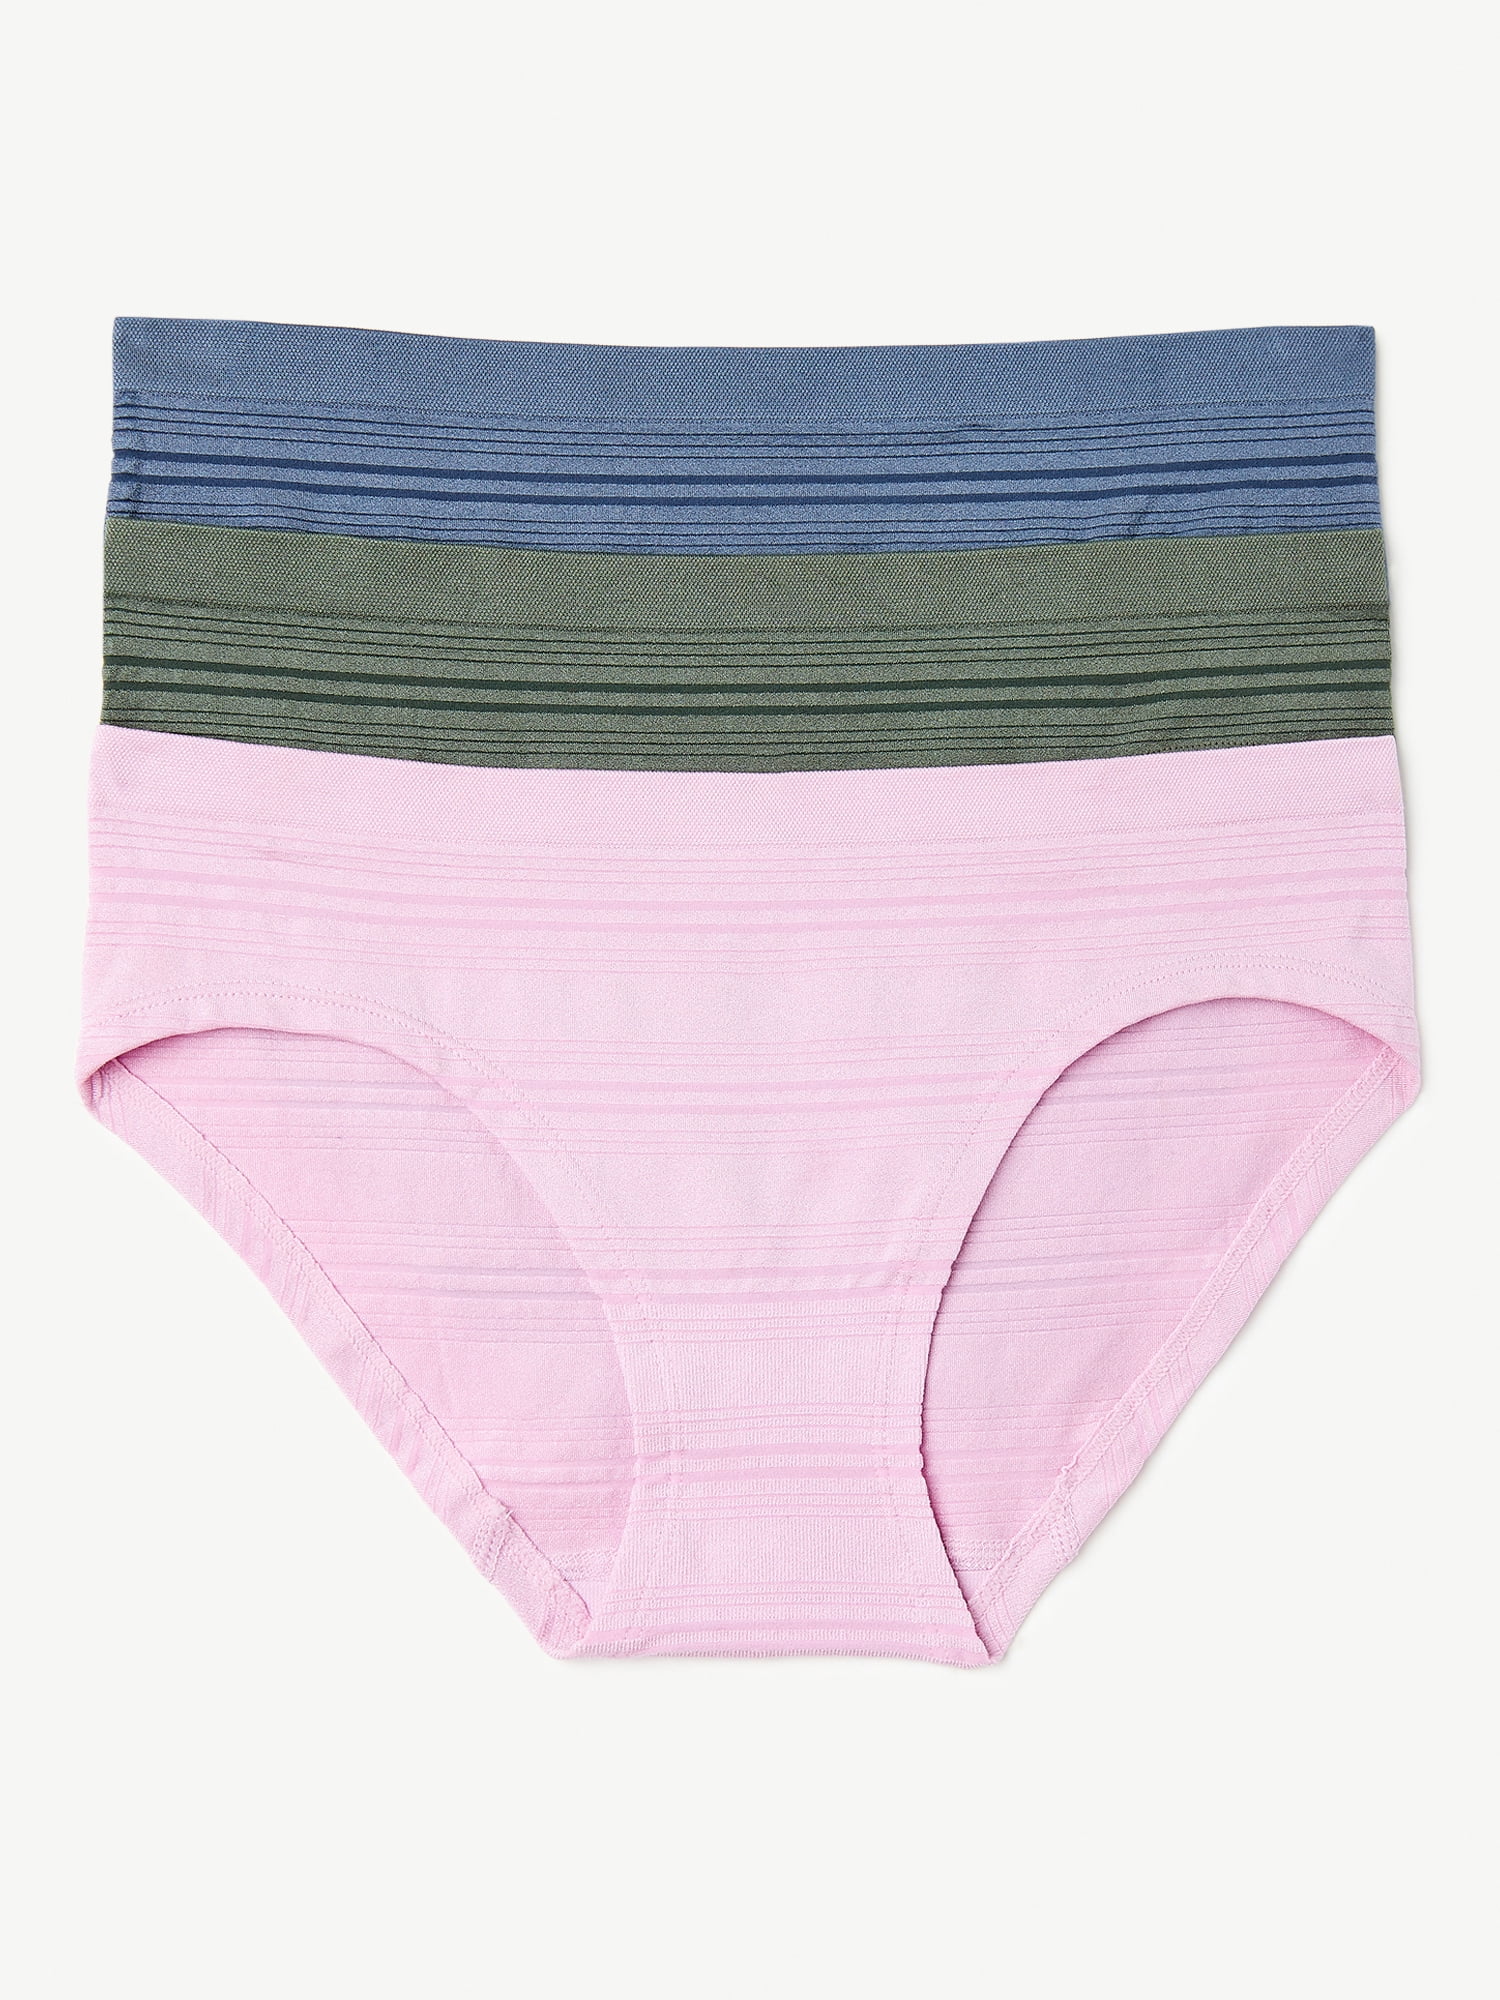 Joyspun Women's Seamless Sheer Stripe Hipster Panties, 3-Pack, Sizes S ...